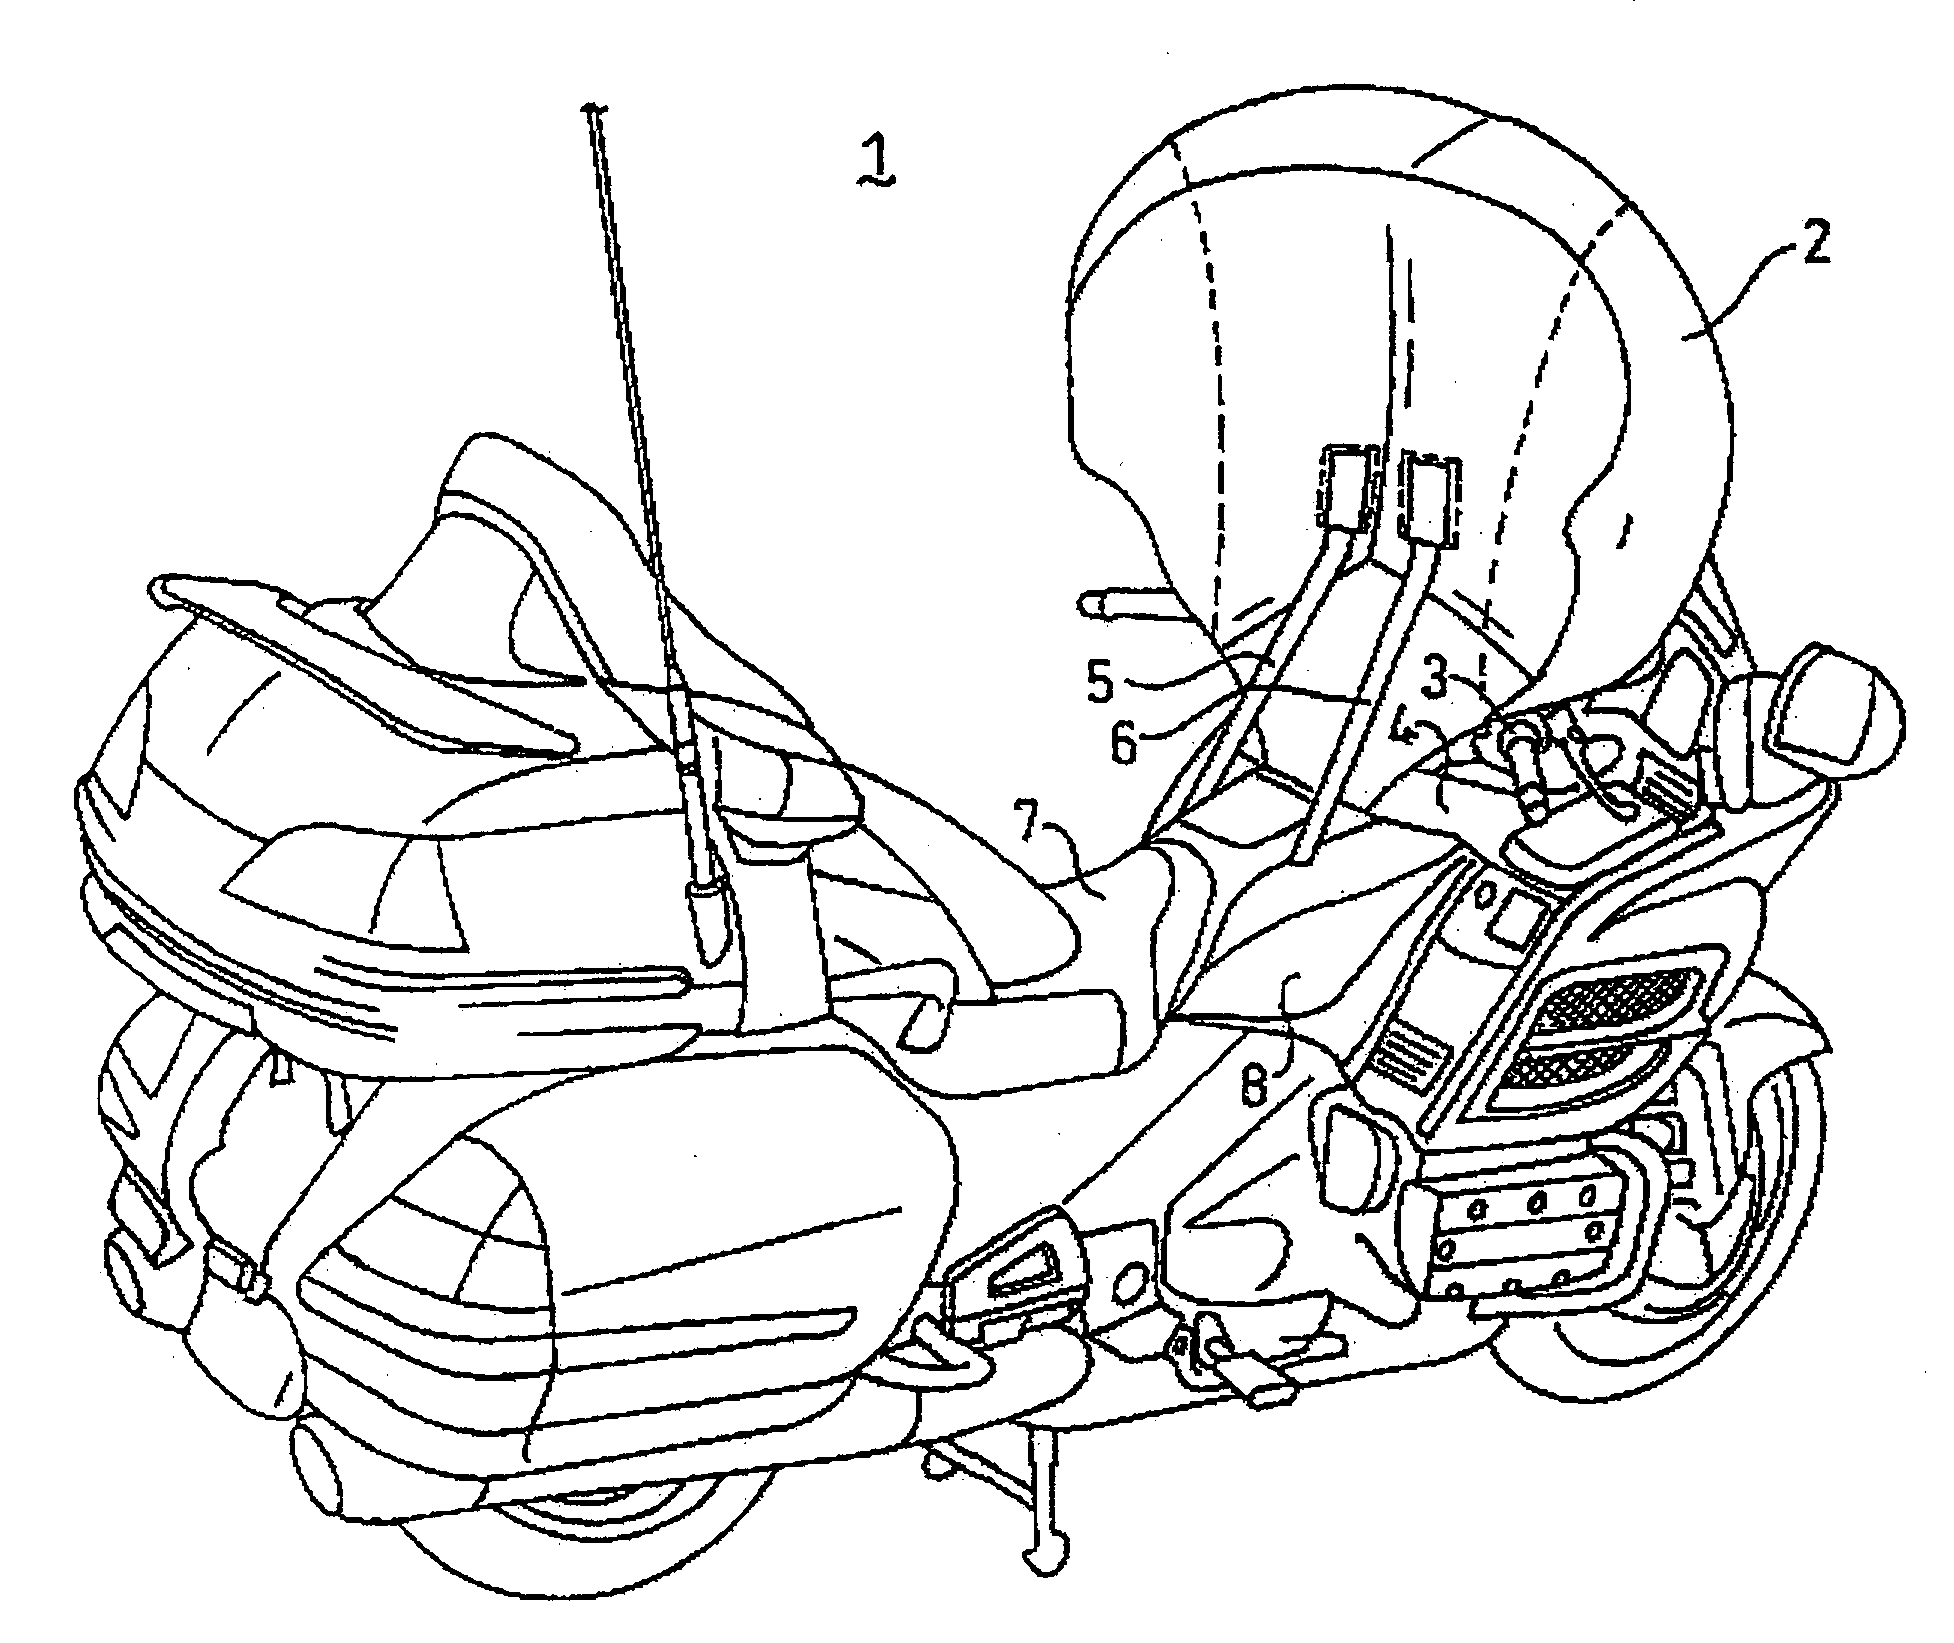 Motorcycle airbag module